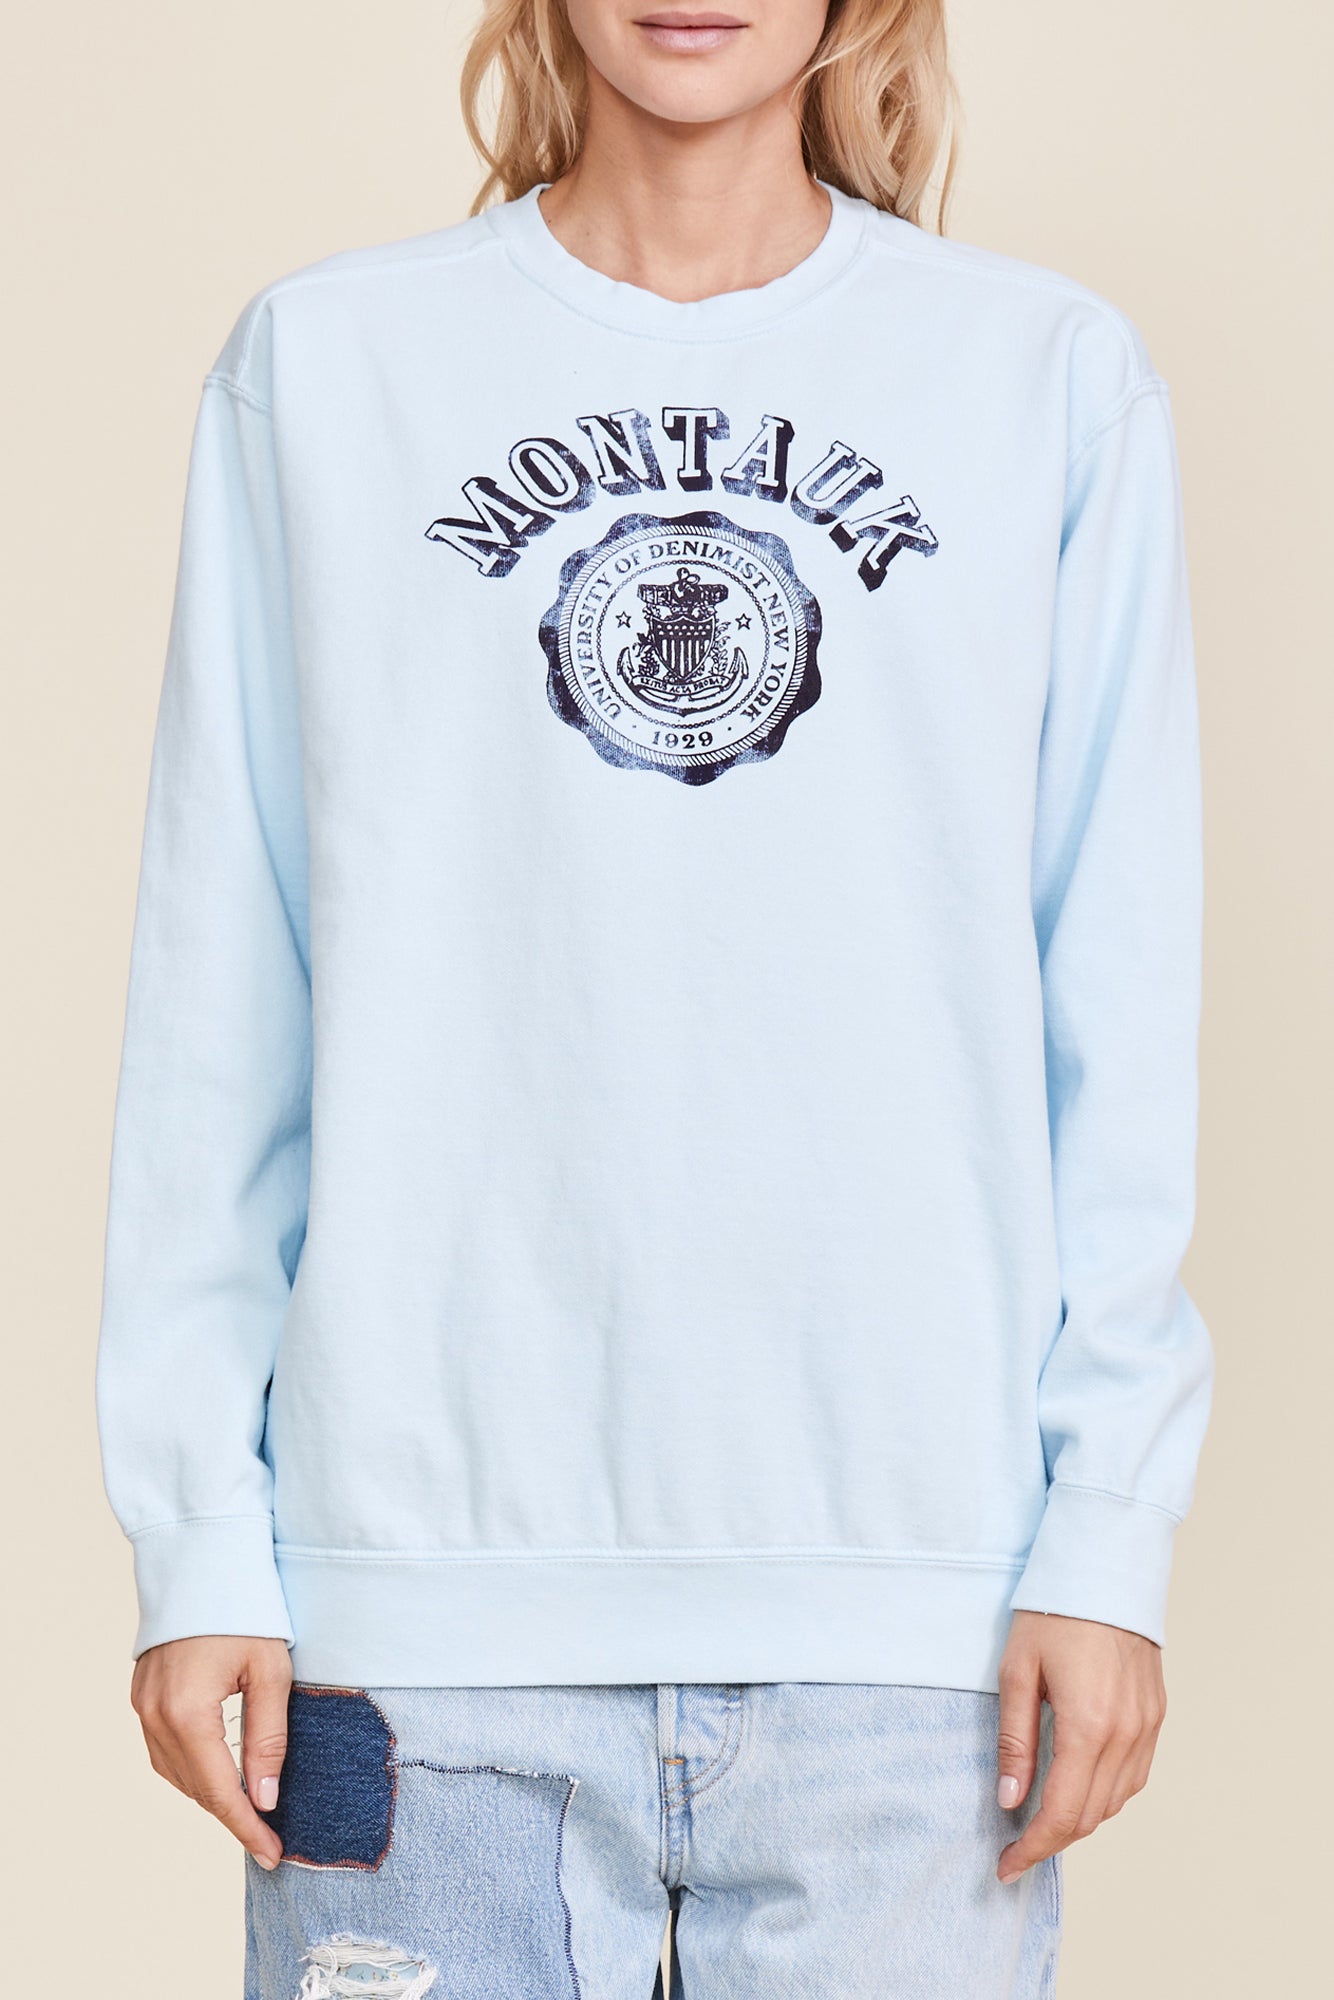 Classic Montauk Sweatshirt